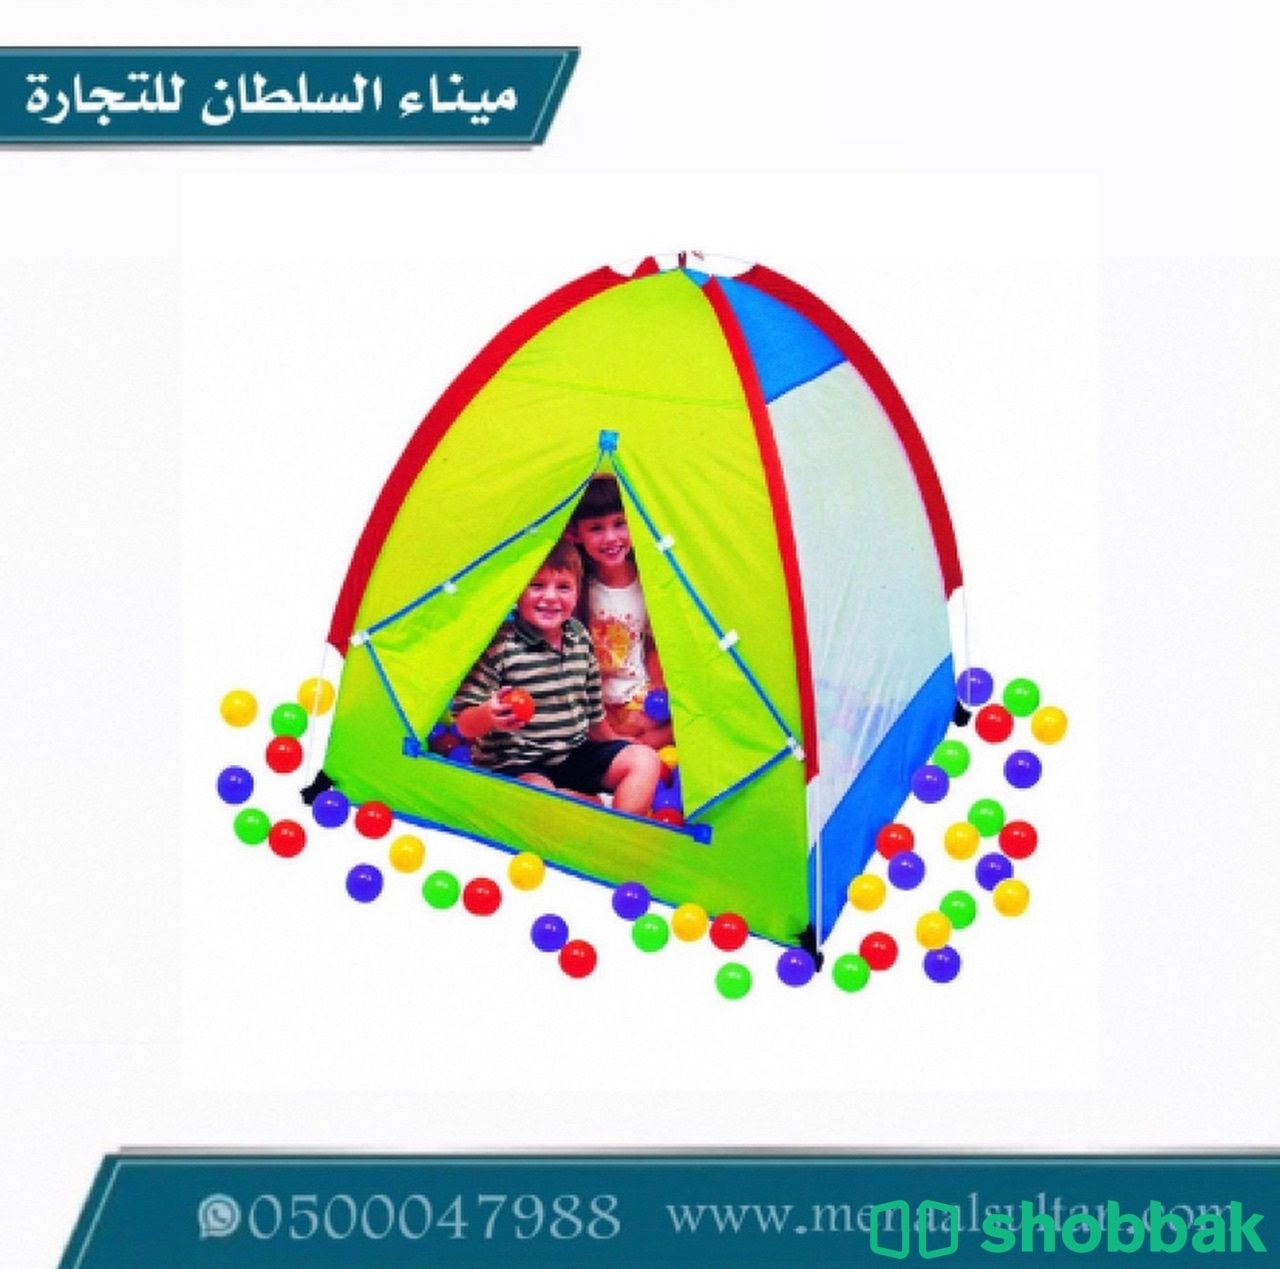 خيمة اللعب مع 200 كرة ملونة.   Shobbak Saudi Arabia